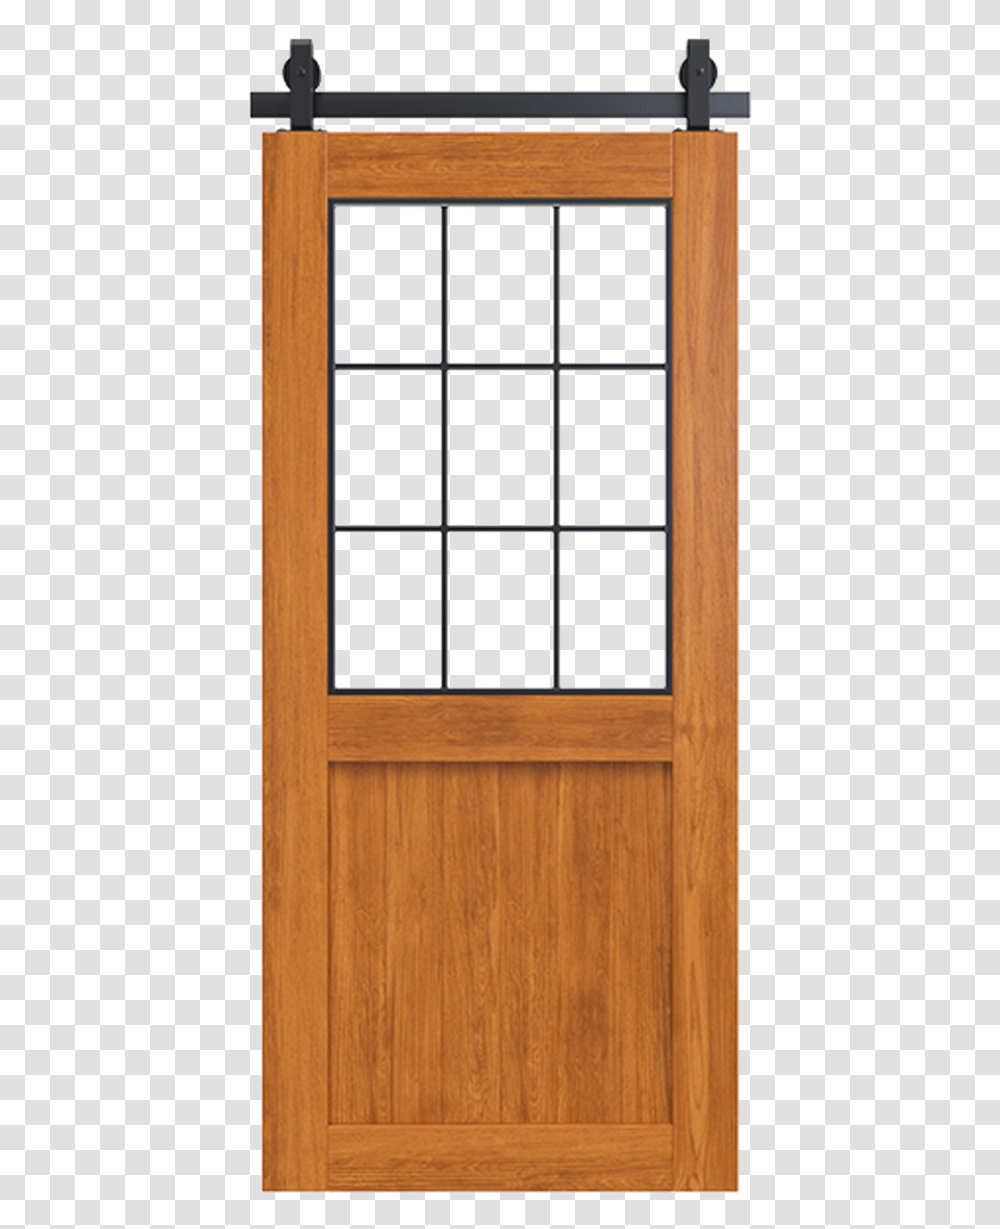 Stained Wood Frame Barn Door With Glass Window Door, Hardwood, Picture Window, French Door Transparent Png